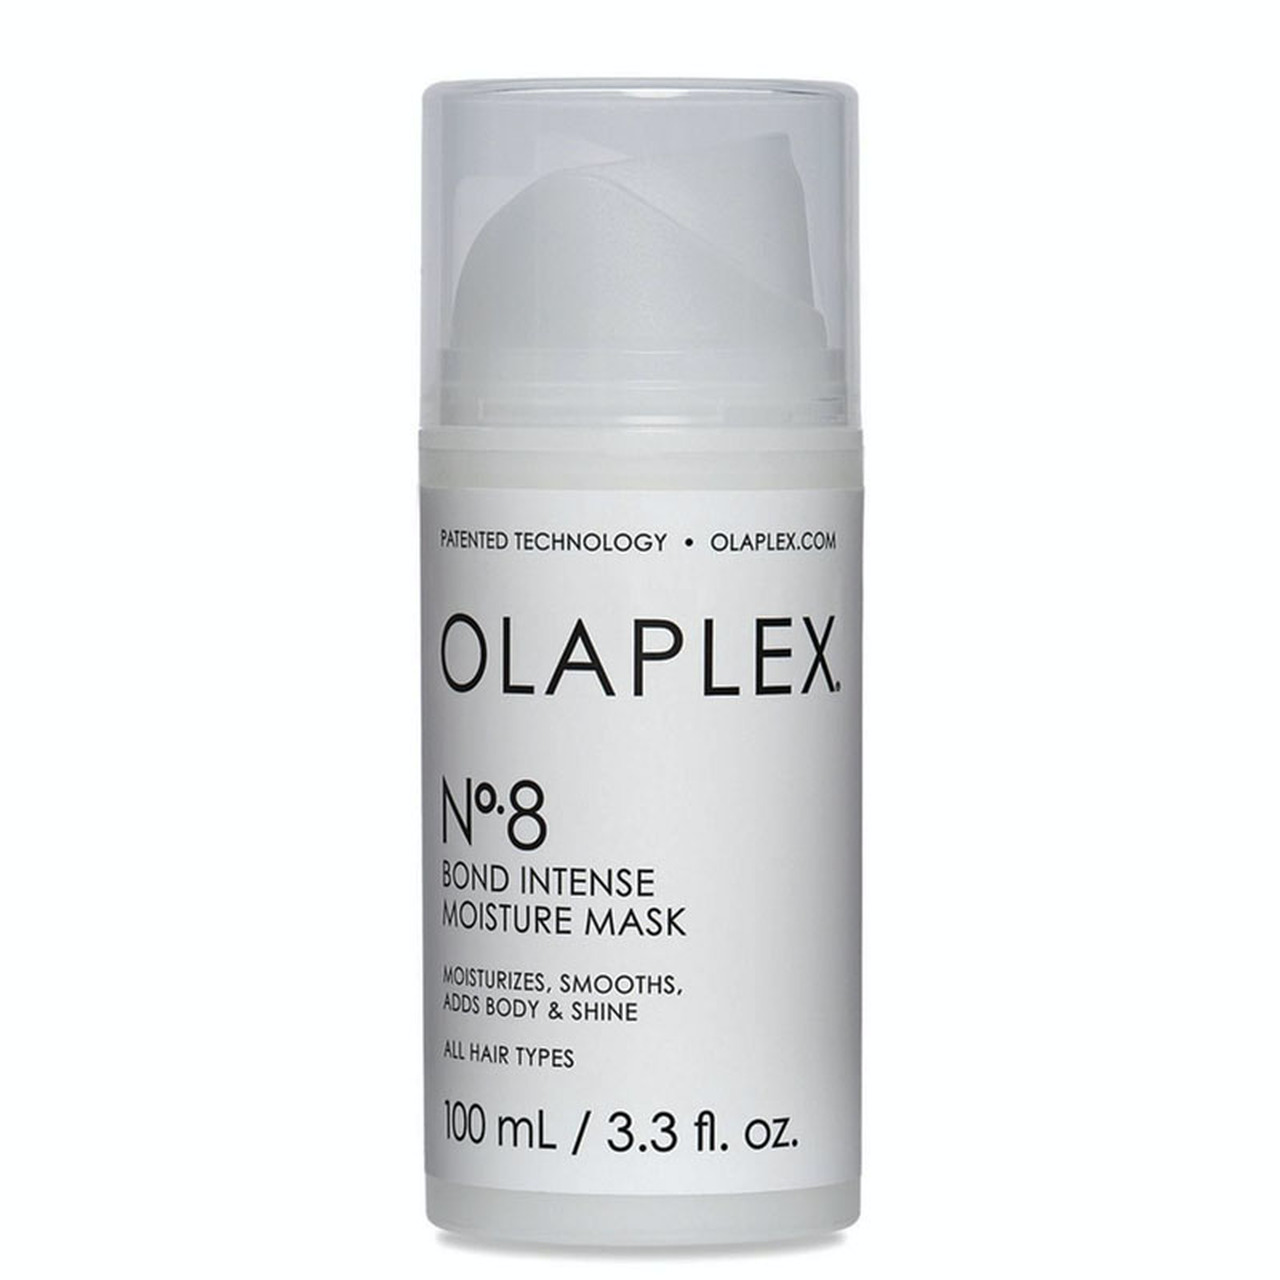 4.Olaplex No.8 Bond Intense Moisture Mask €27.50 